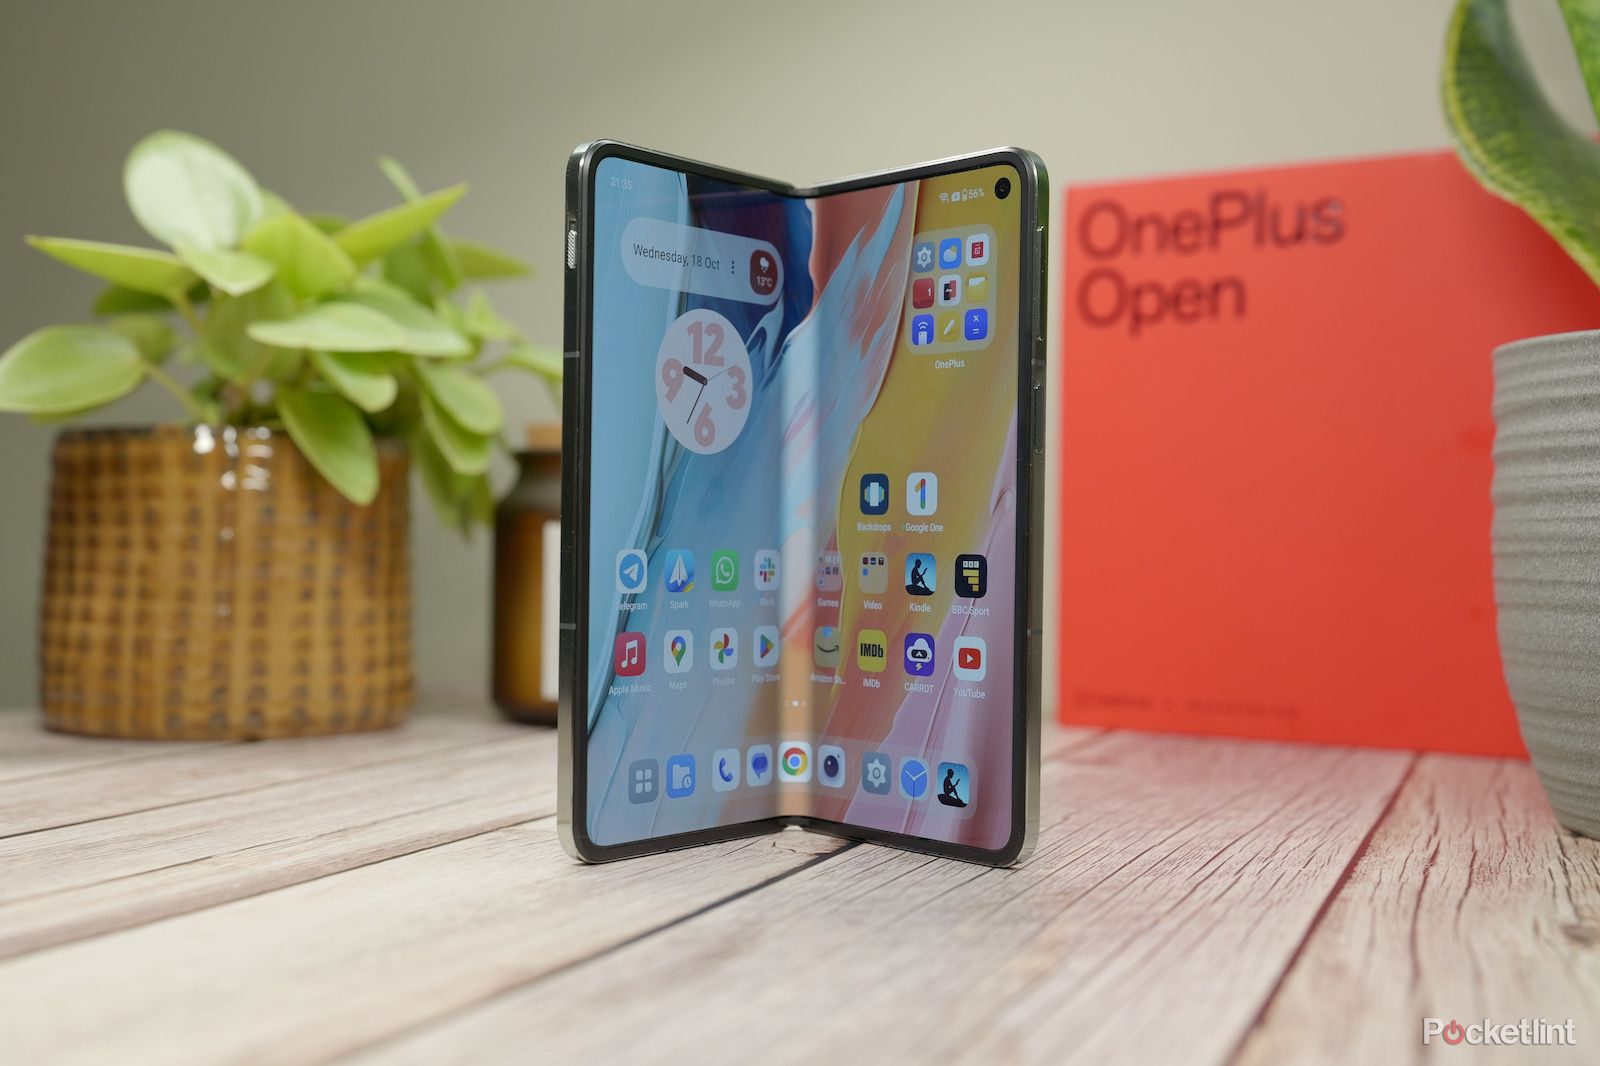 OnePlus Open - standing - open - main display-1